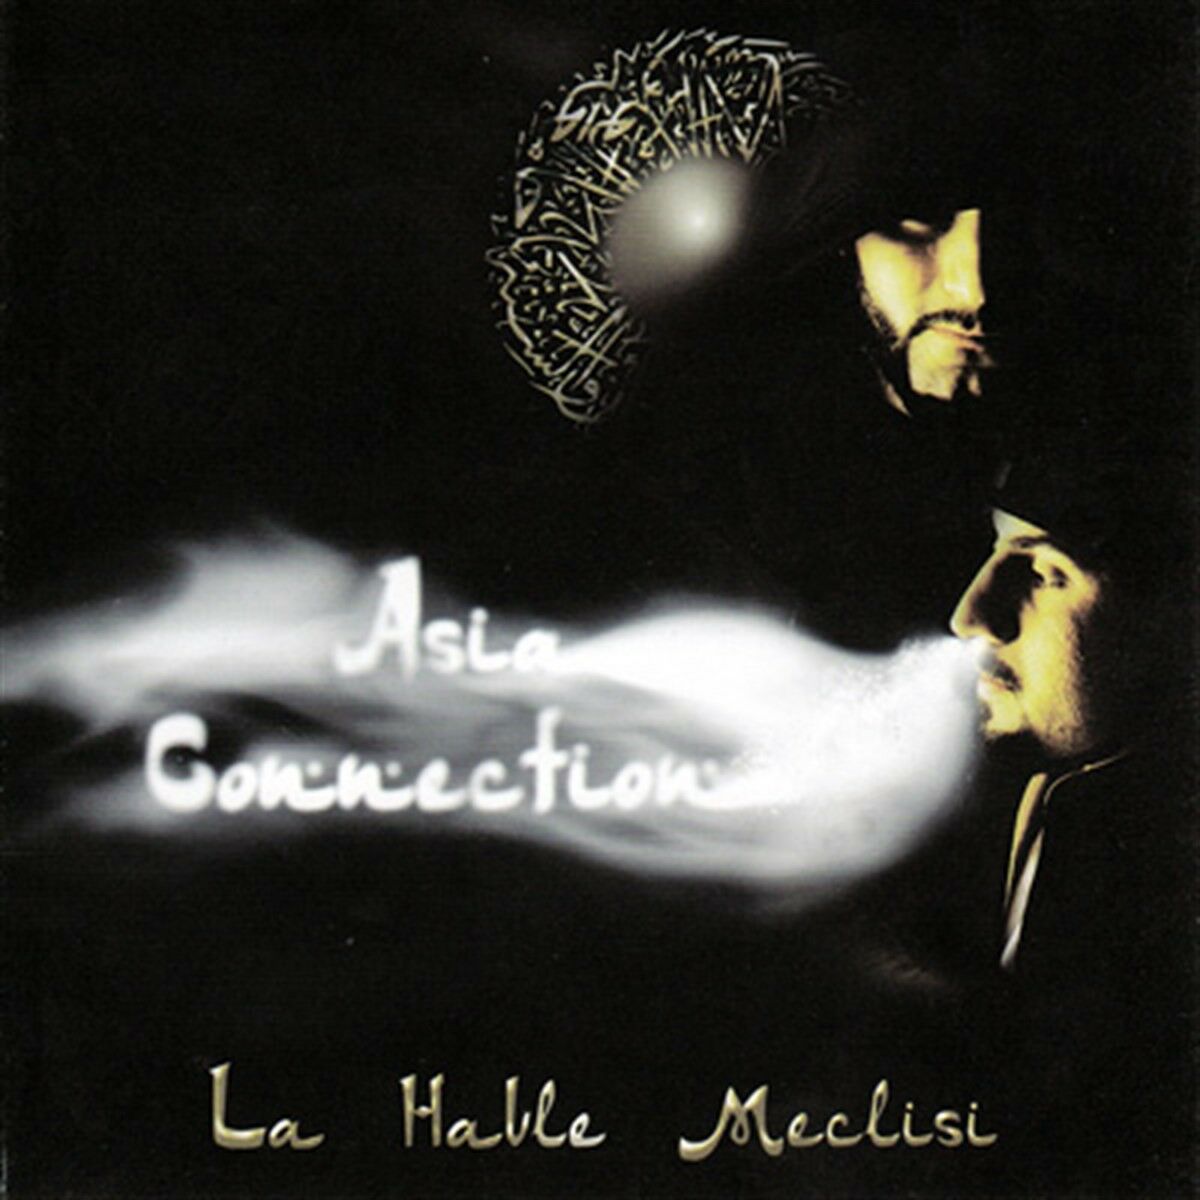 ASIA CONNECTION - LA HAVLE MECLİSİ (CD) (2010)